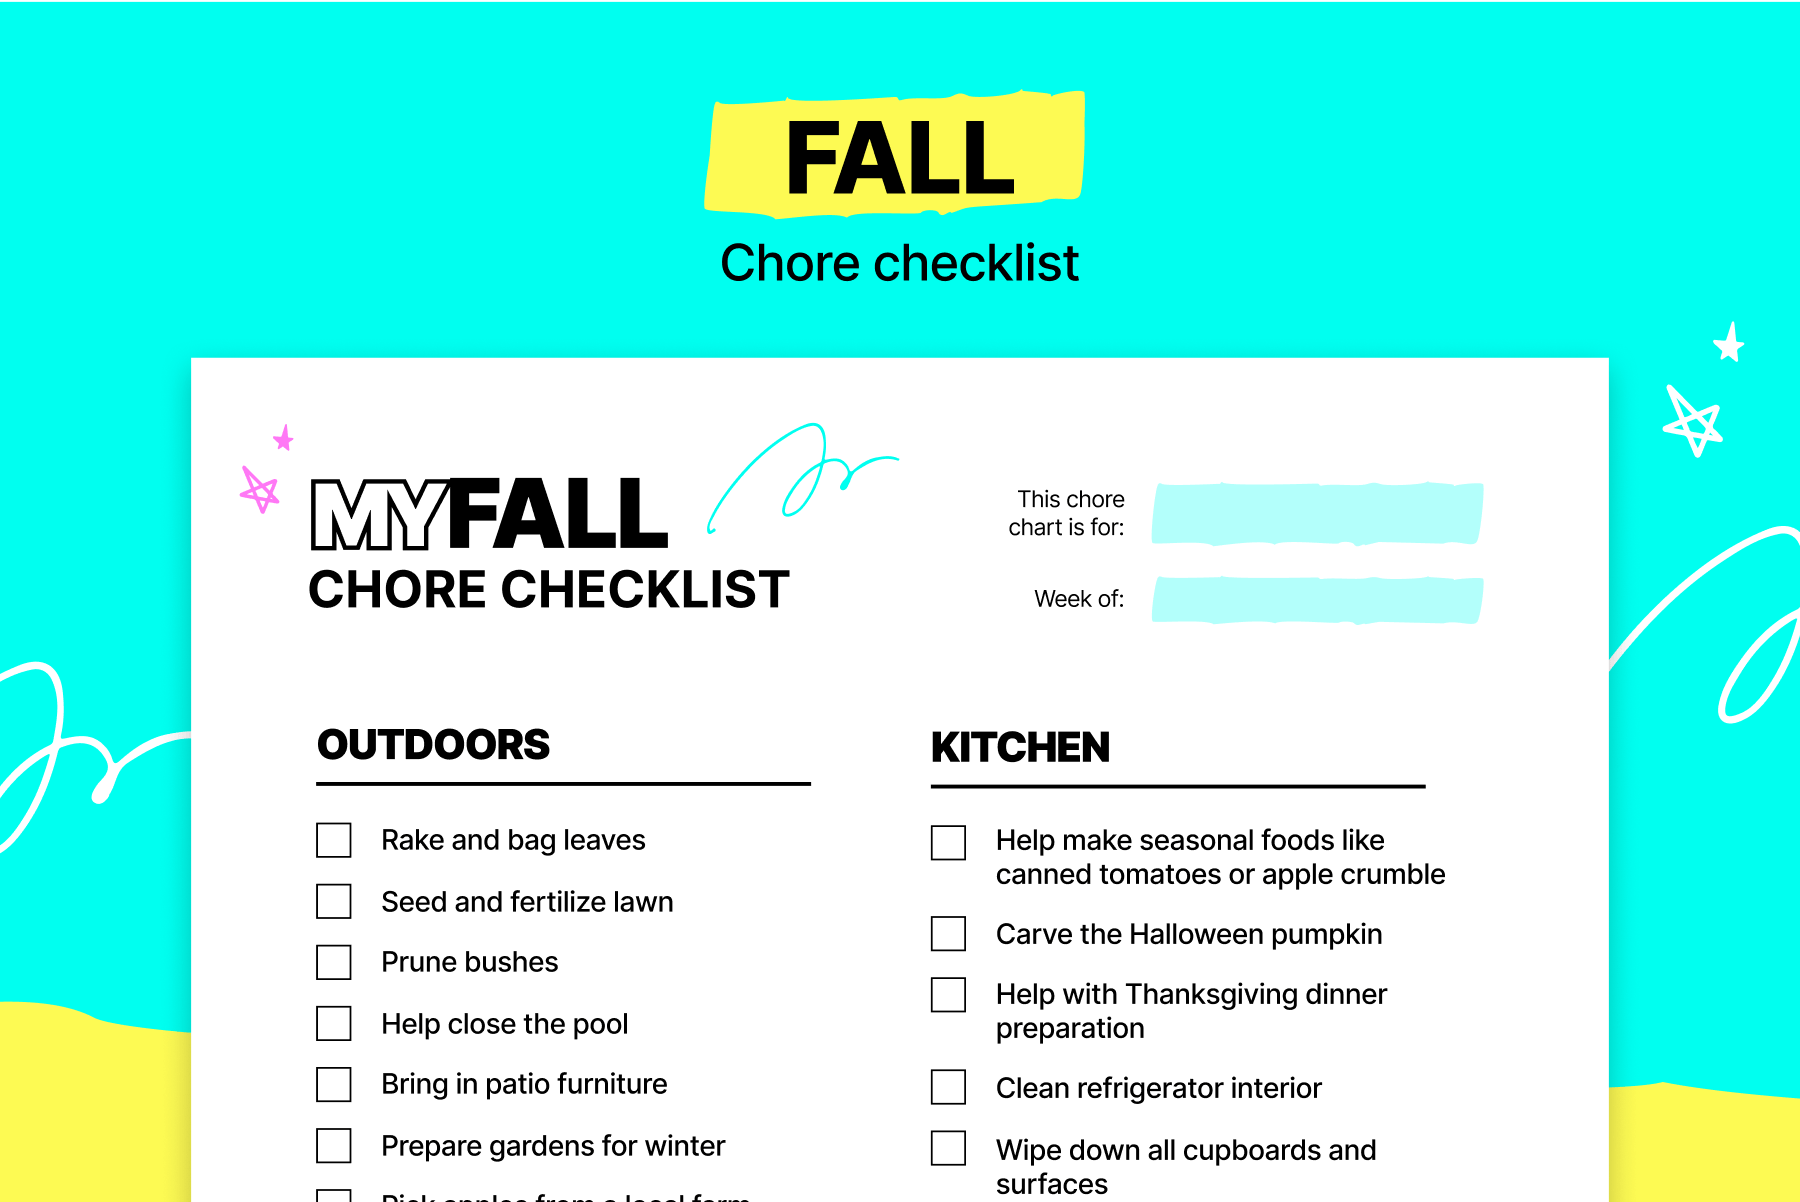 Fall chore checklist